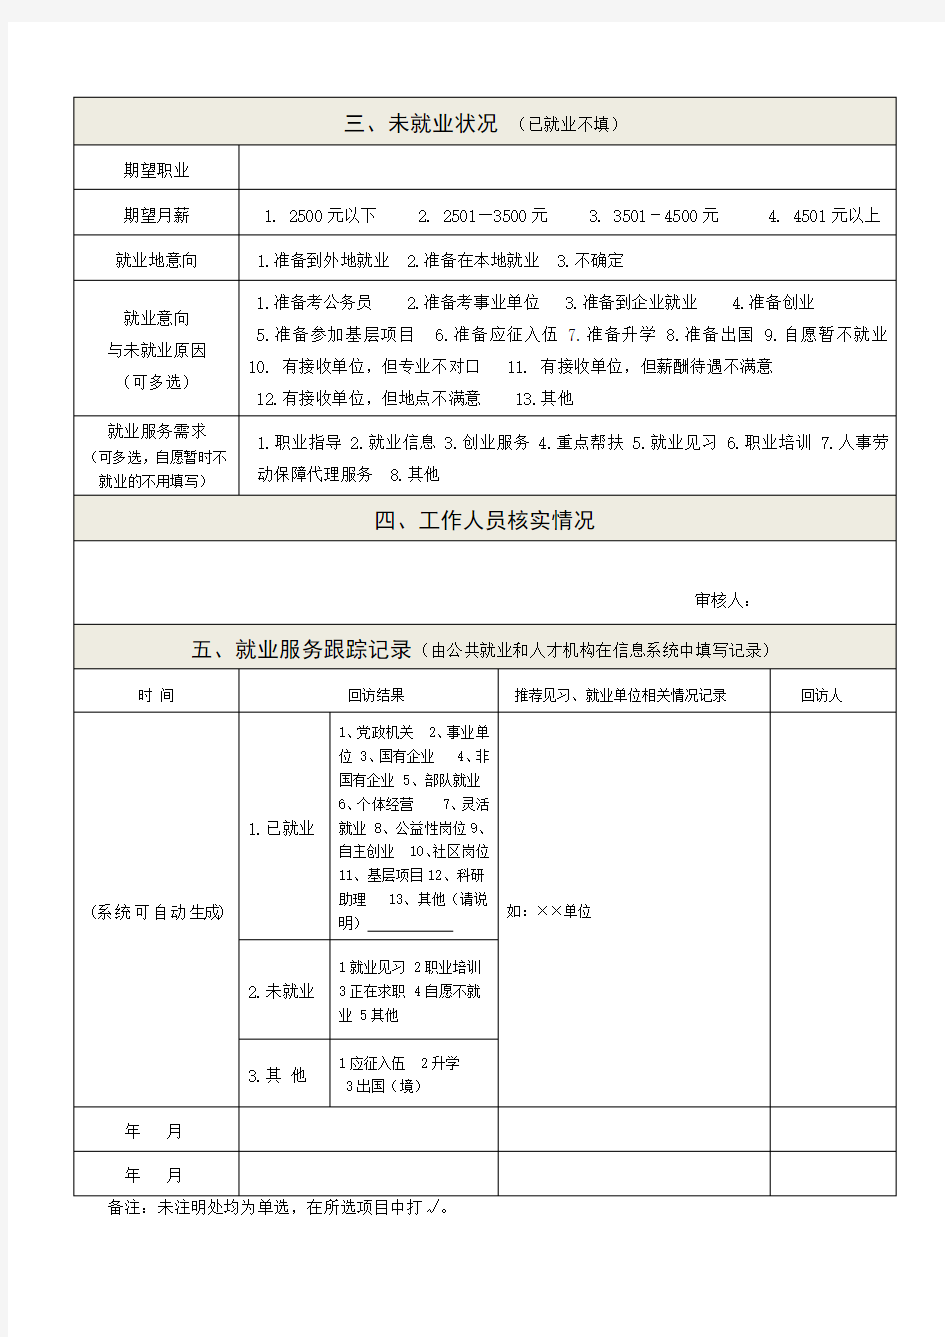 陕西省高校毕业生信息登记表(2017版)